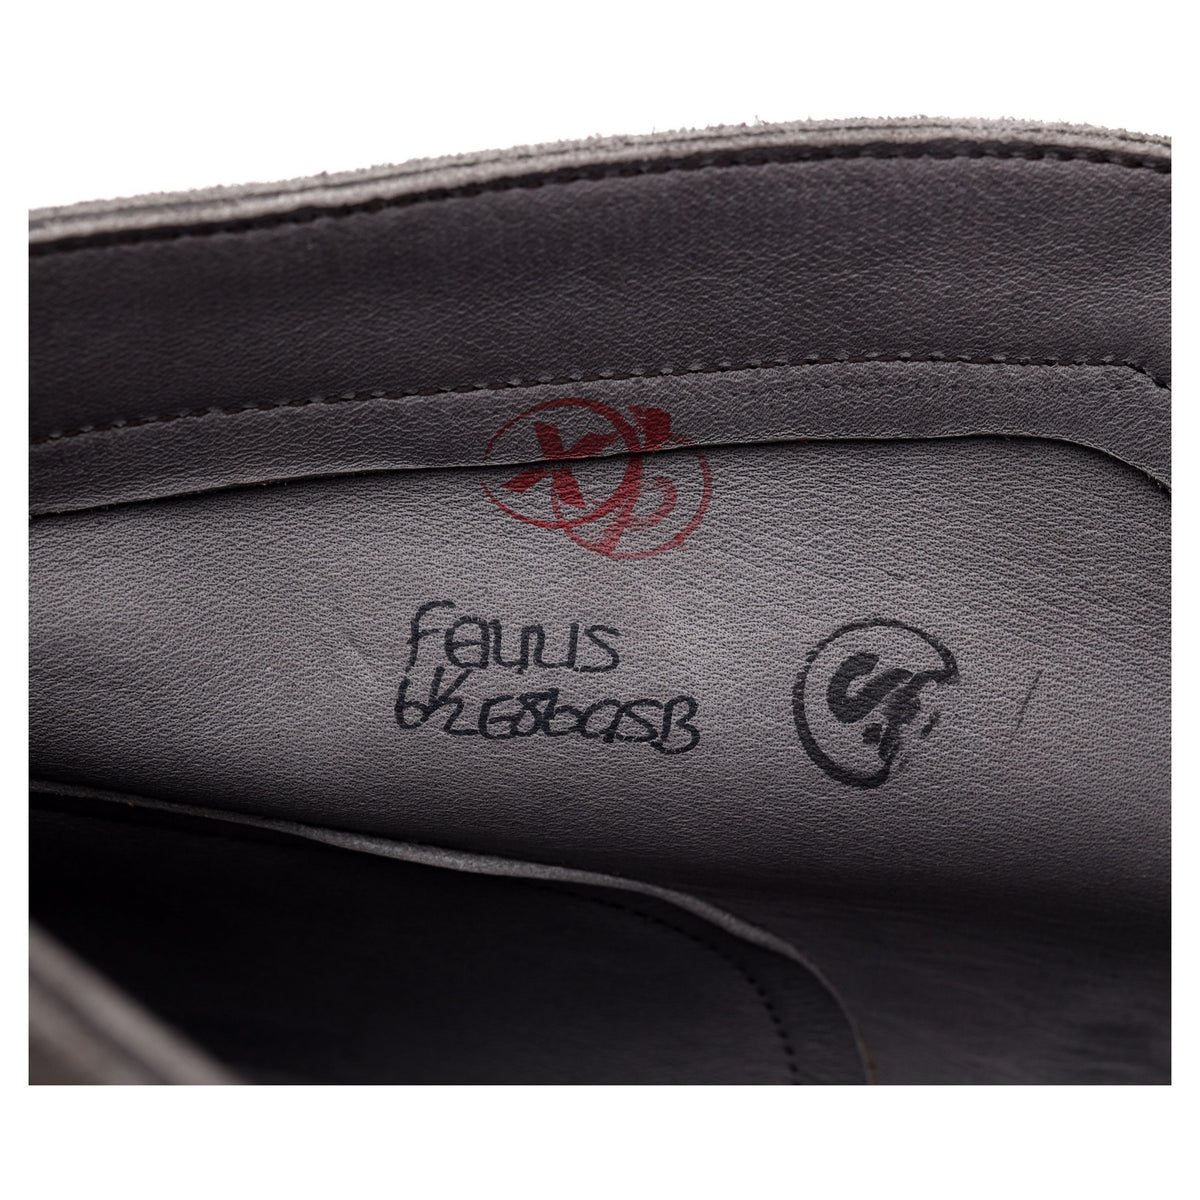 &#39;Ferris&#39; Grey Suede Chukka Boots UK 6.5 E